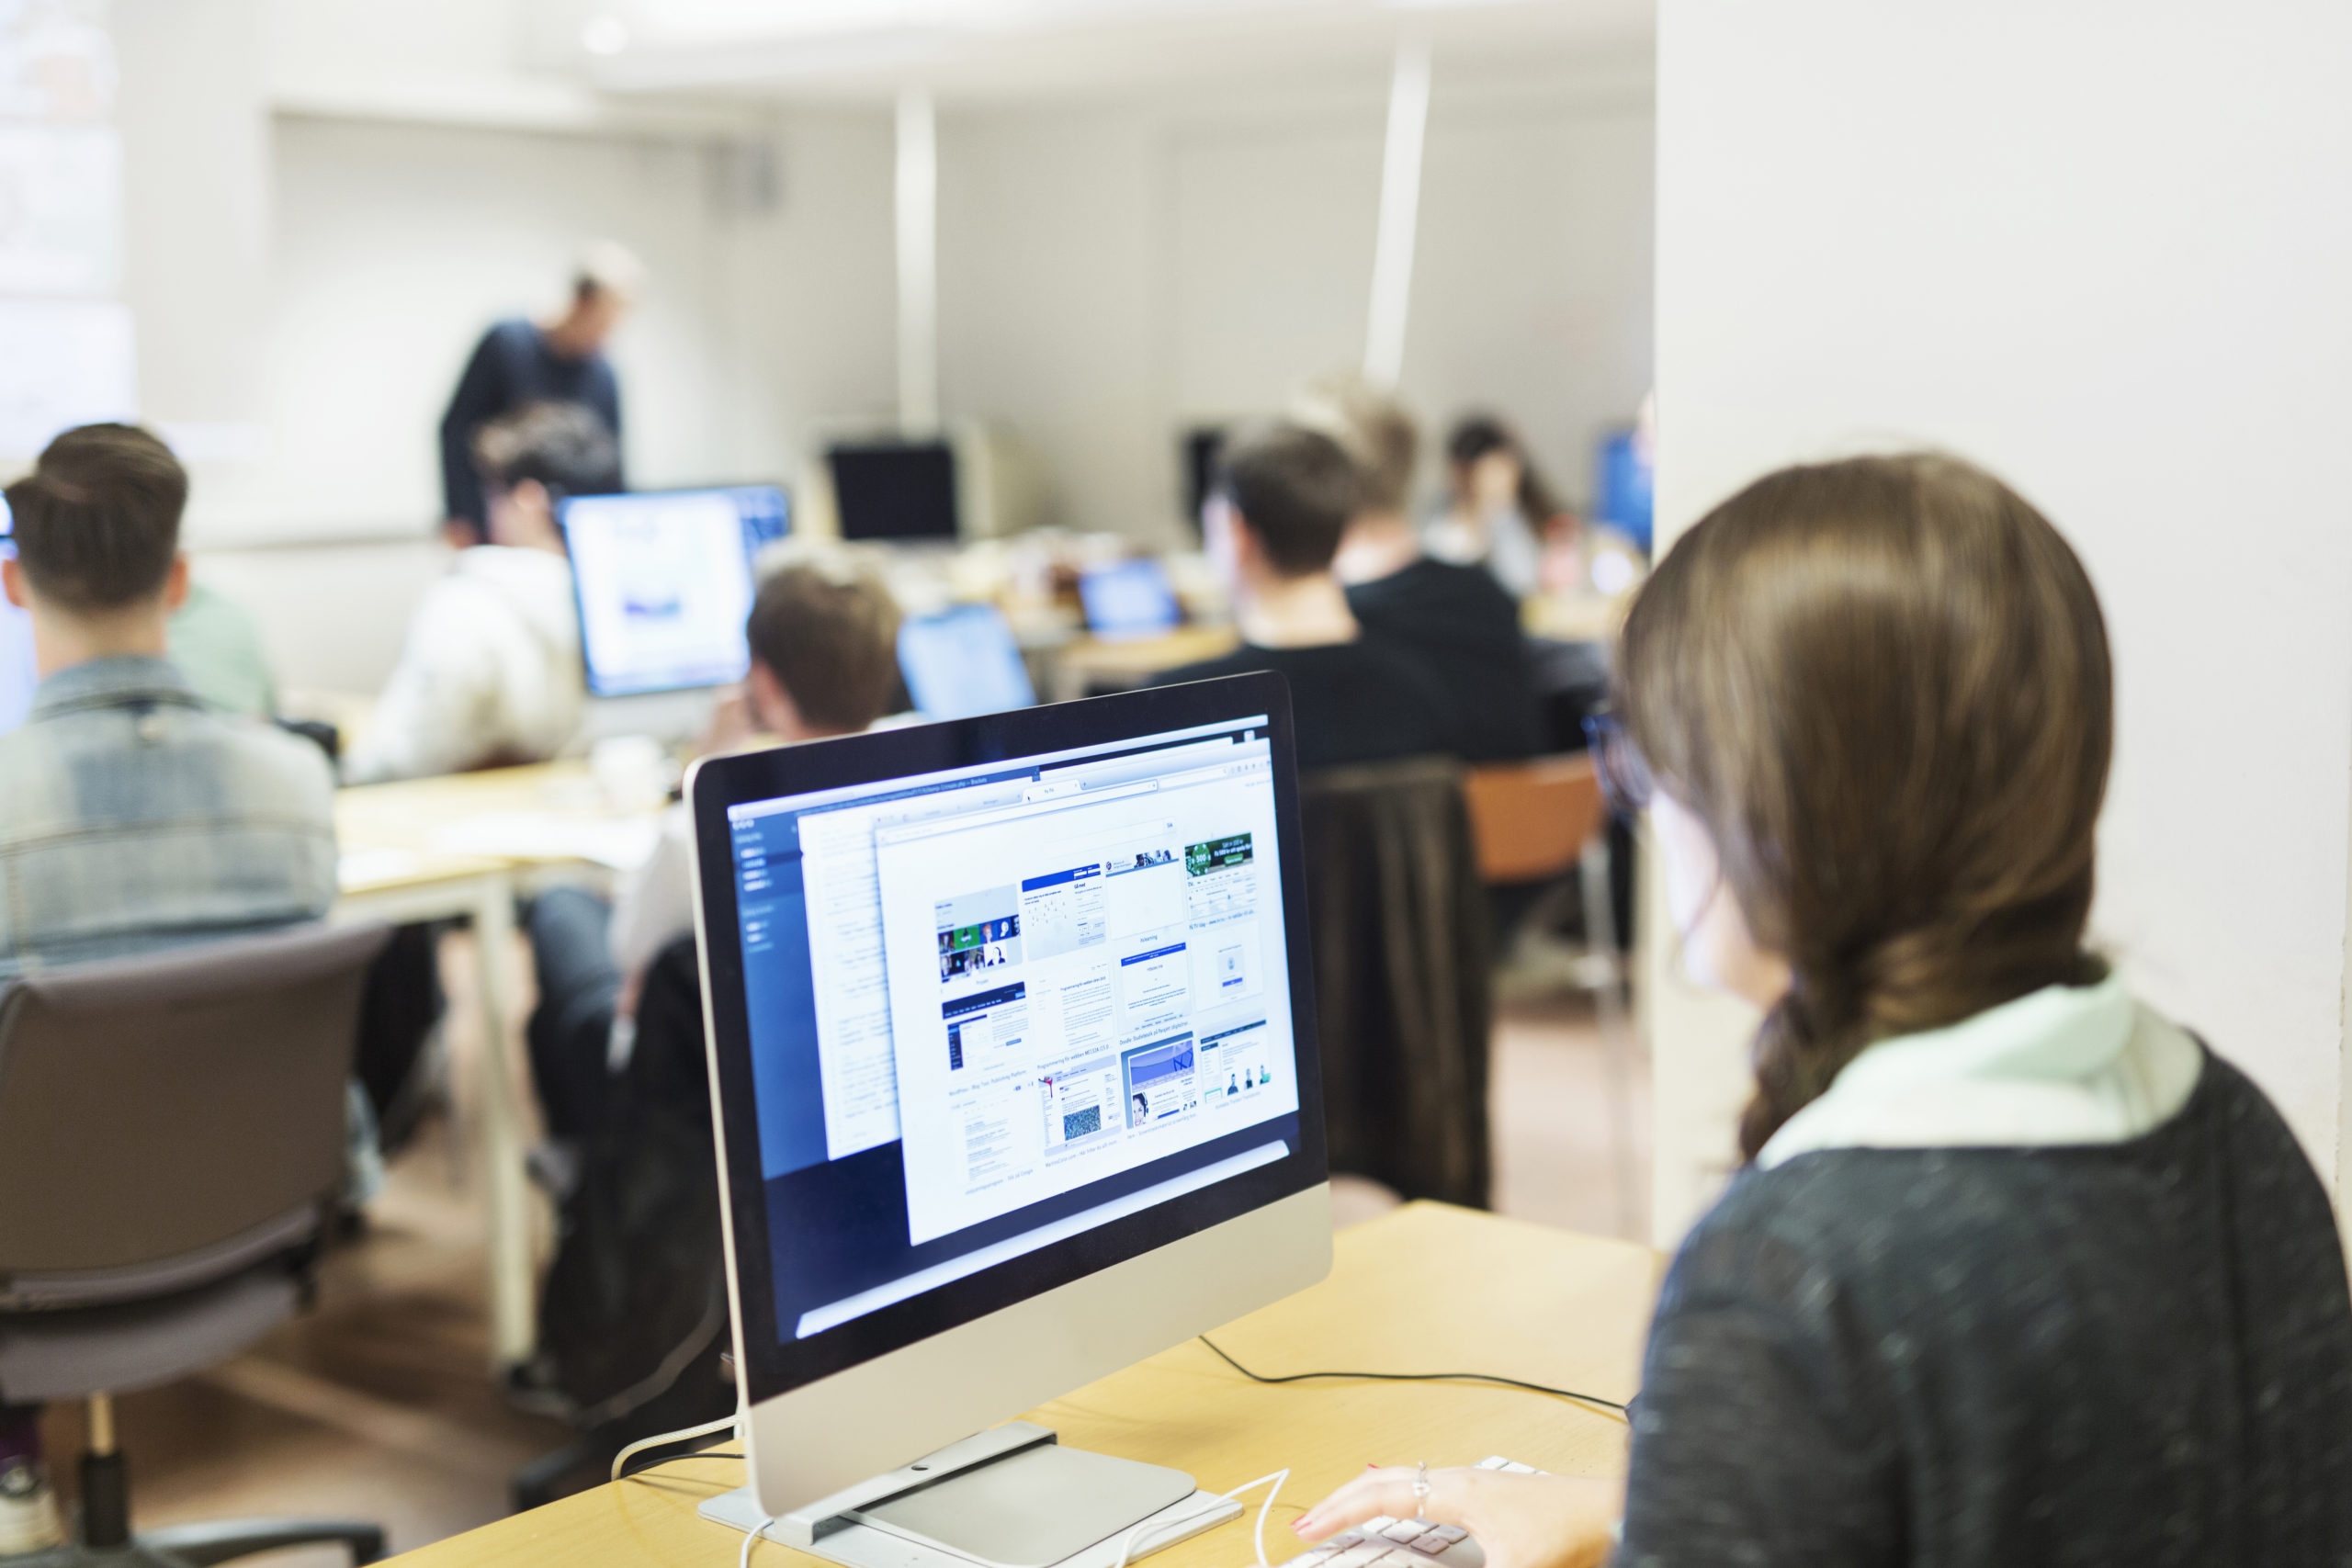 Image en vedette d'un étudiant sur un ordinateur dans un laboratoire en train de passer une évaluation qui garantit la validité de l'examen.